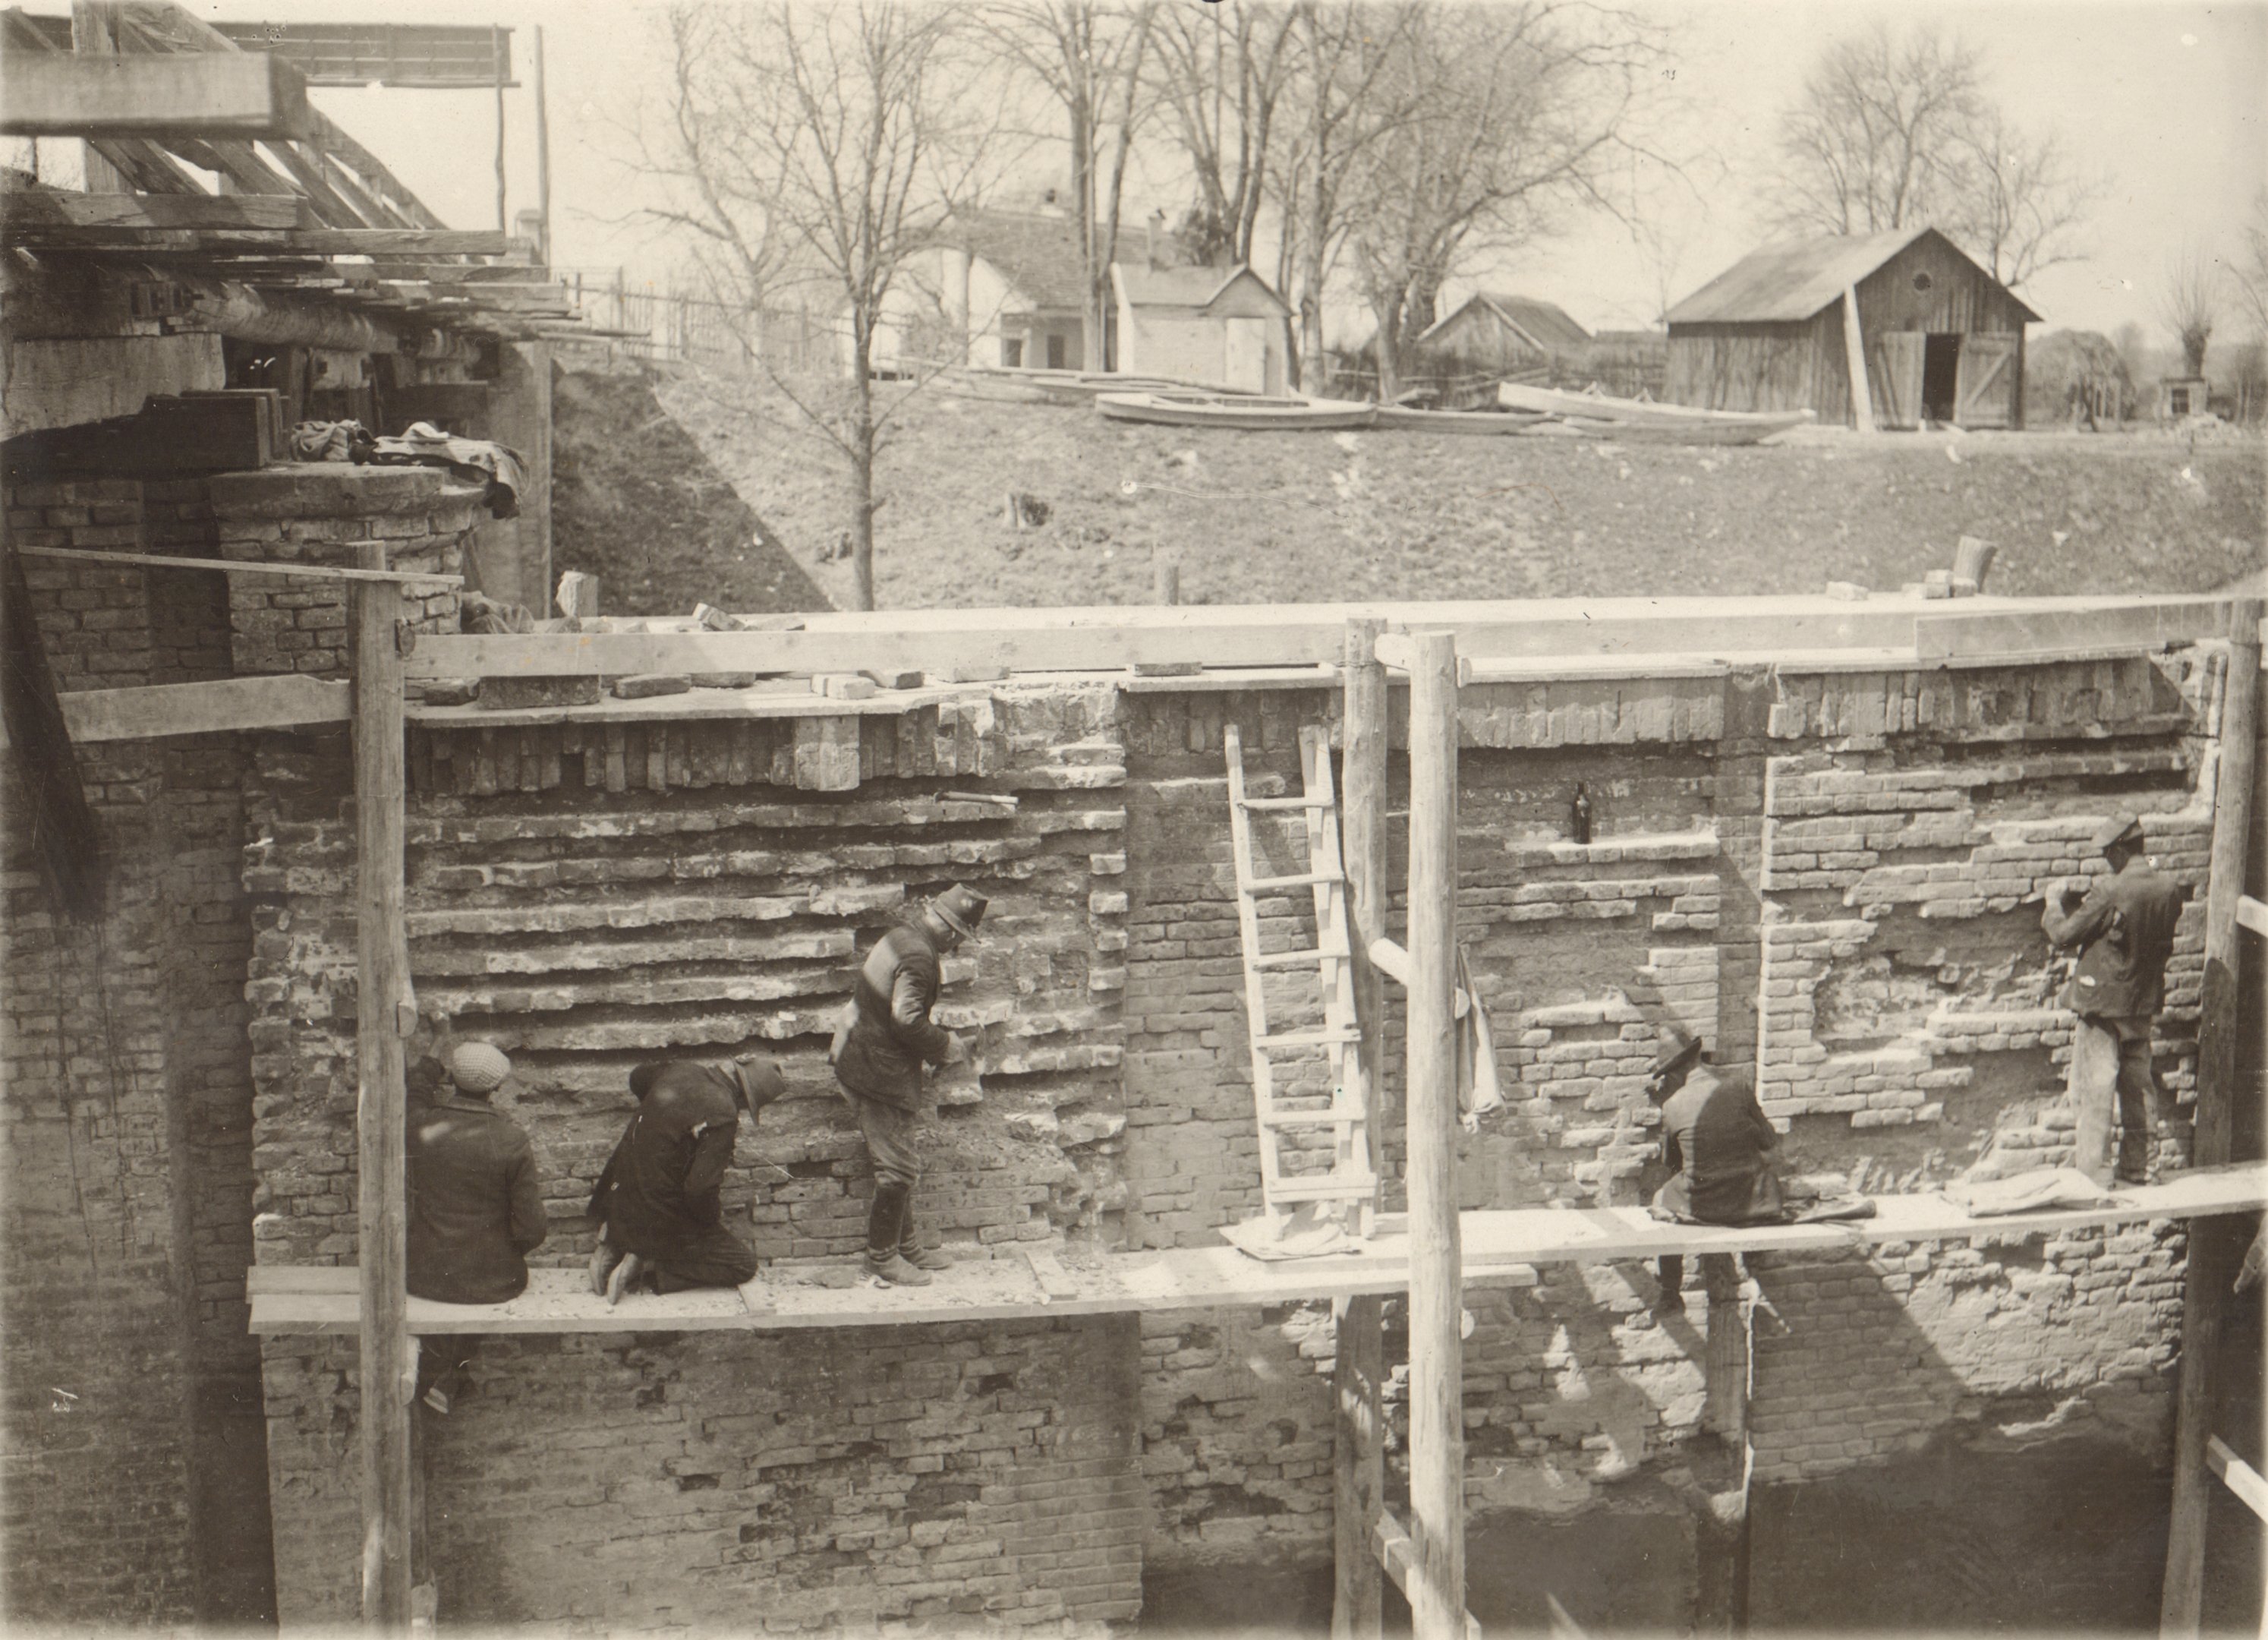 A hajózózsilip jobboldali falának javítása. Az alsó kapu alatti falrész javítás közben, 1932. április 7. (Magyar Környezetvédelmi és Vízügyi Múzeum - Duna Múzeum CC BY-NC-SA)